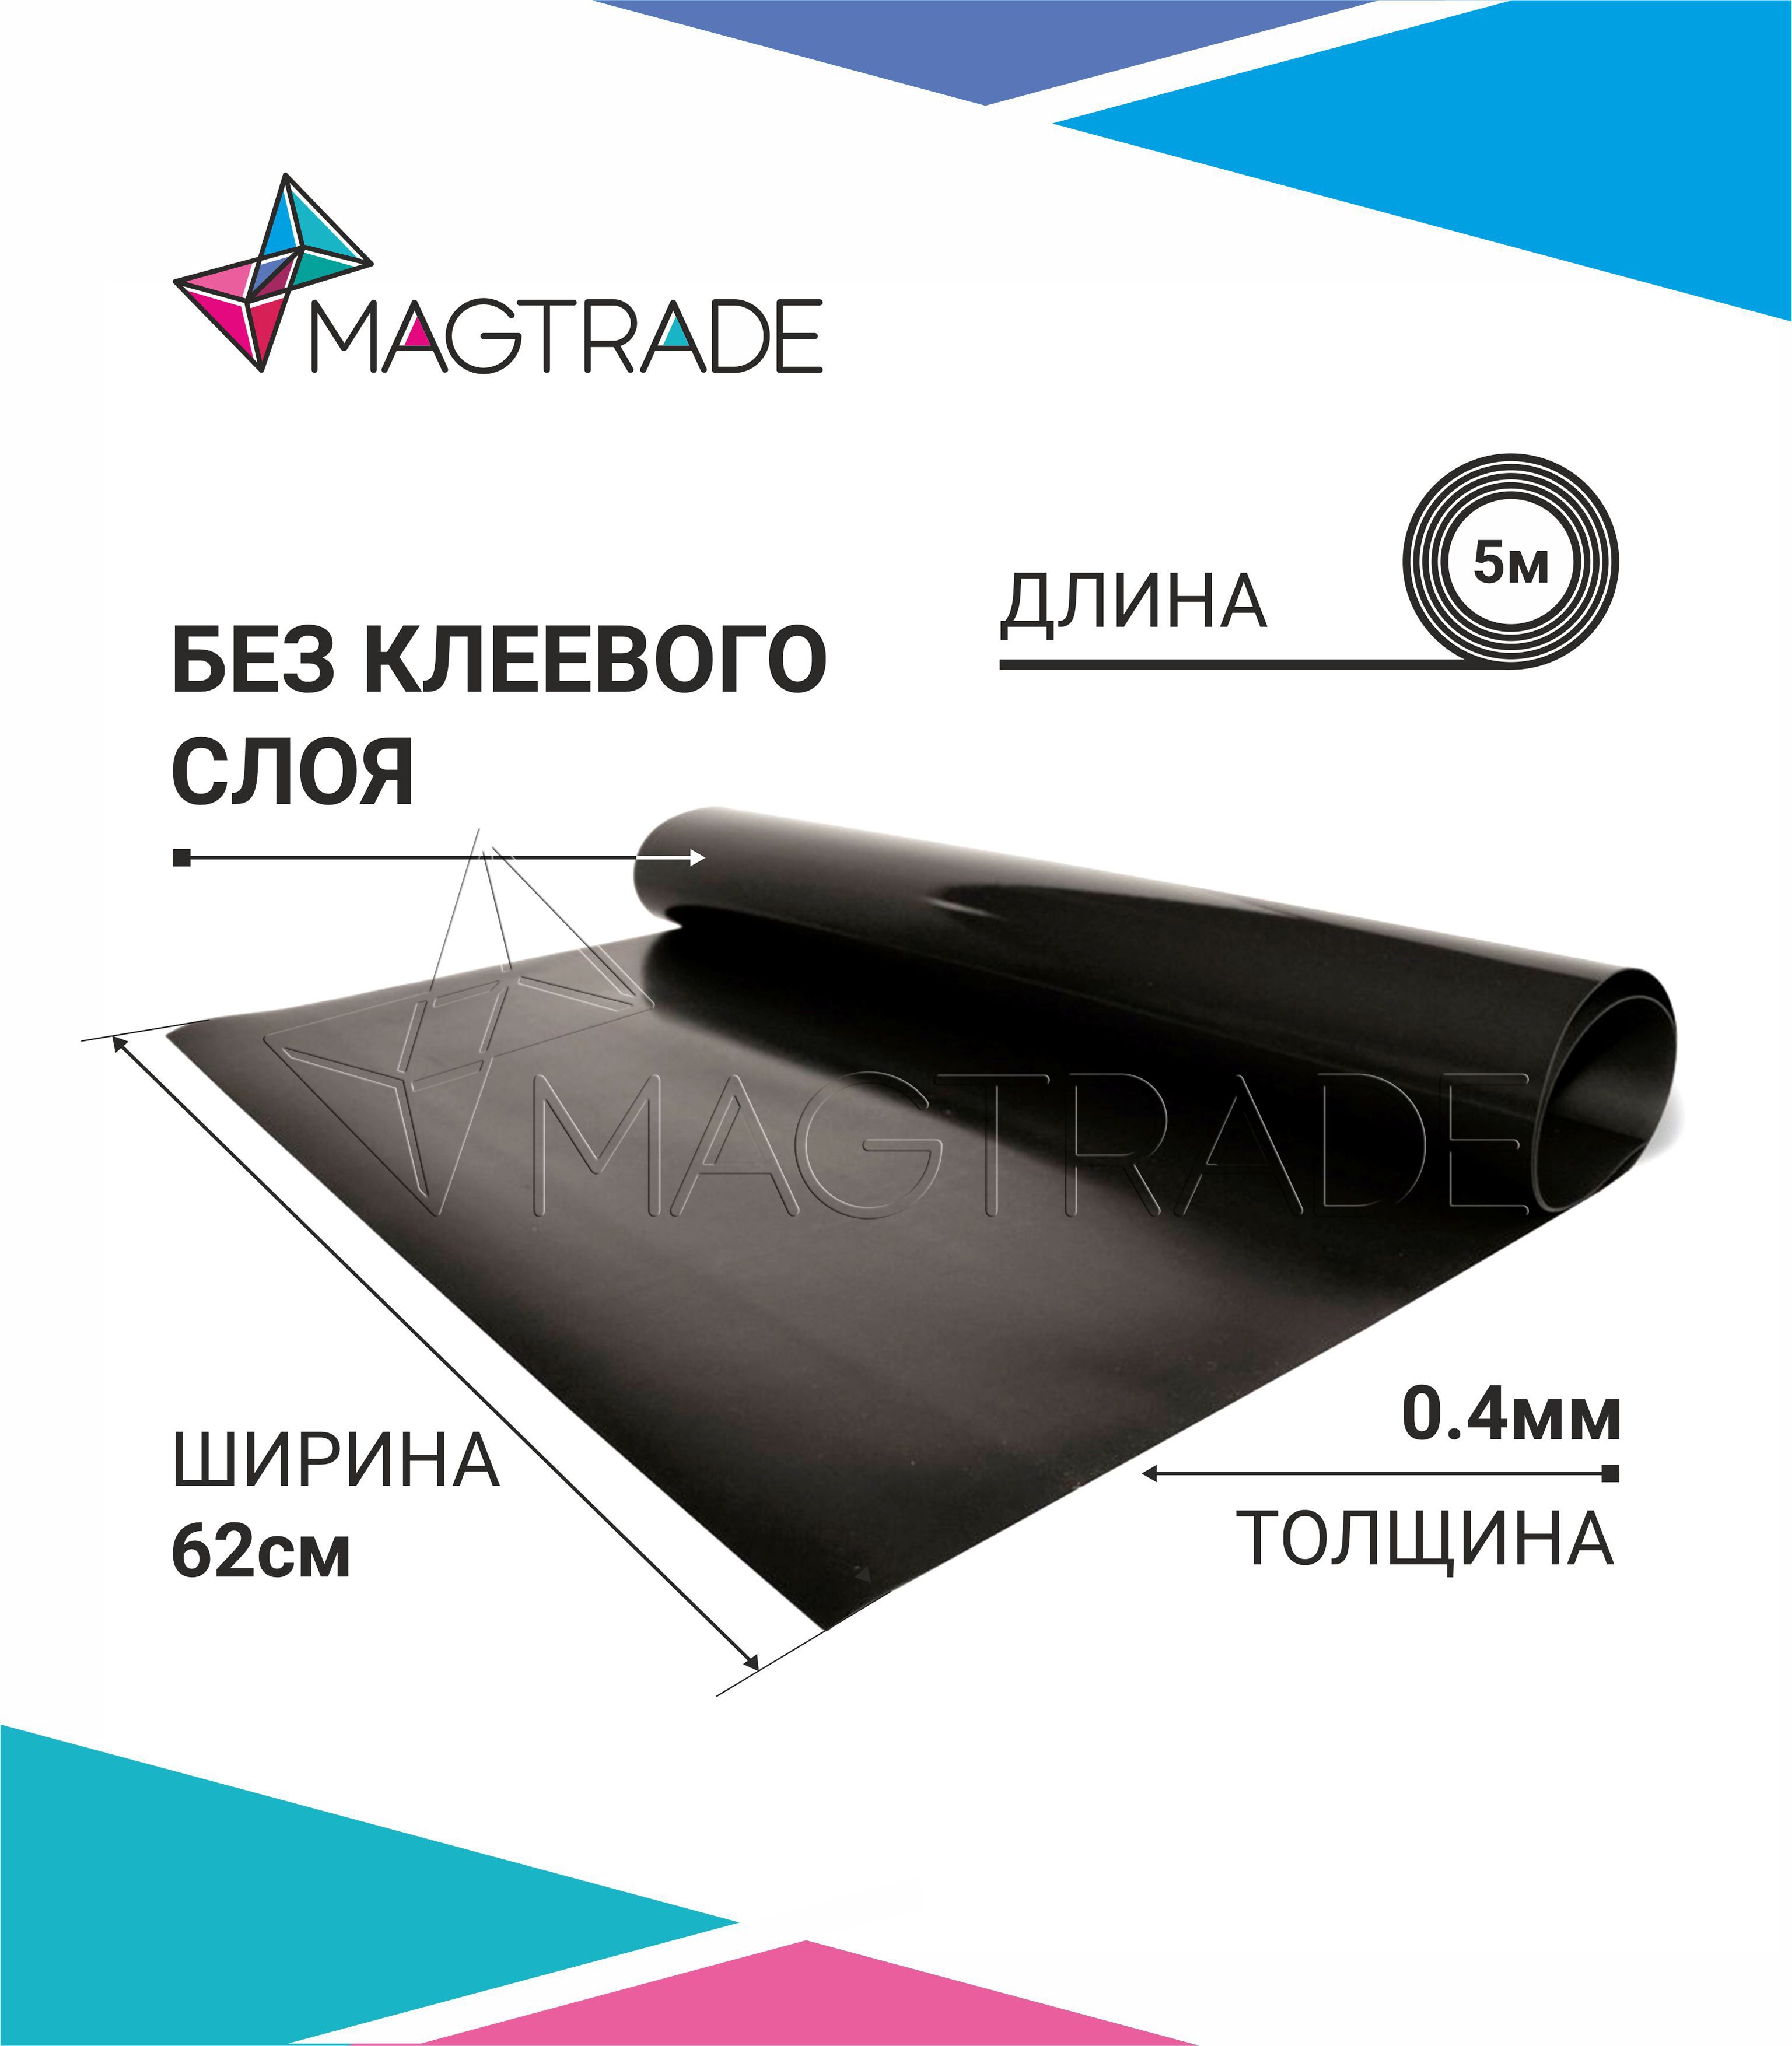 Магнитный винил MAGTRADE без клеевого слоя 0,62 х 5 м, толщина 0,4 мм, лист 5 метров магнитный винил magtrade с клеем толщина 0 9 мм лист 2м